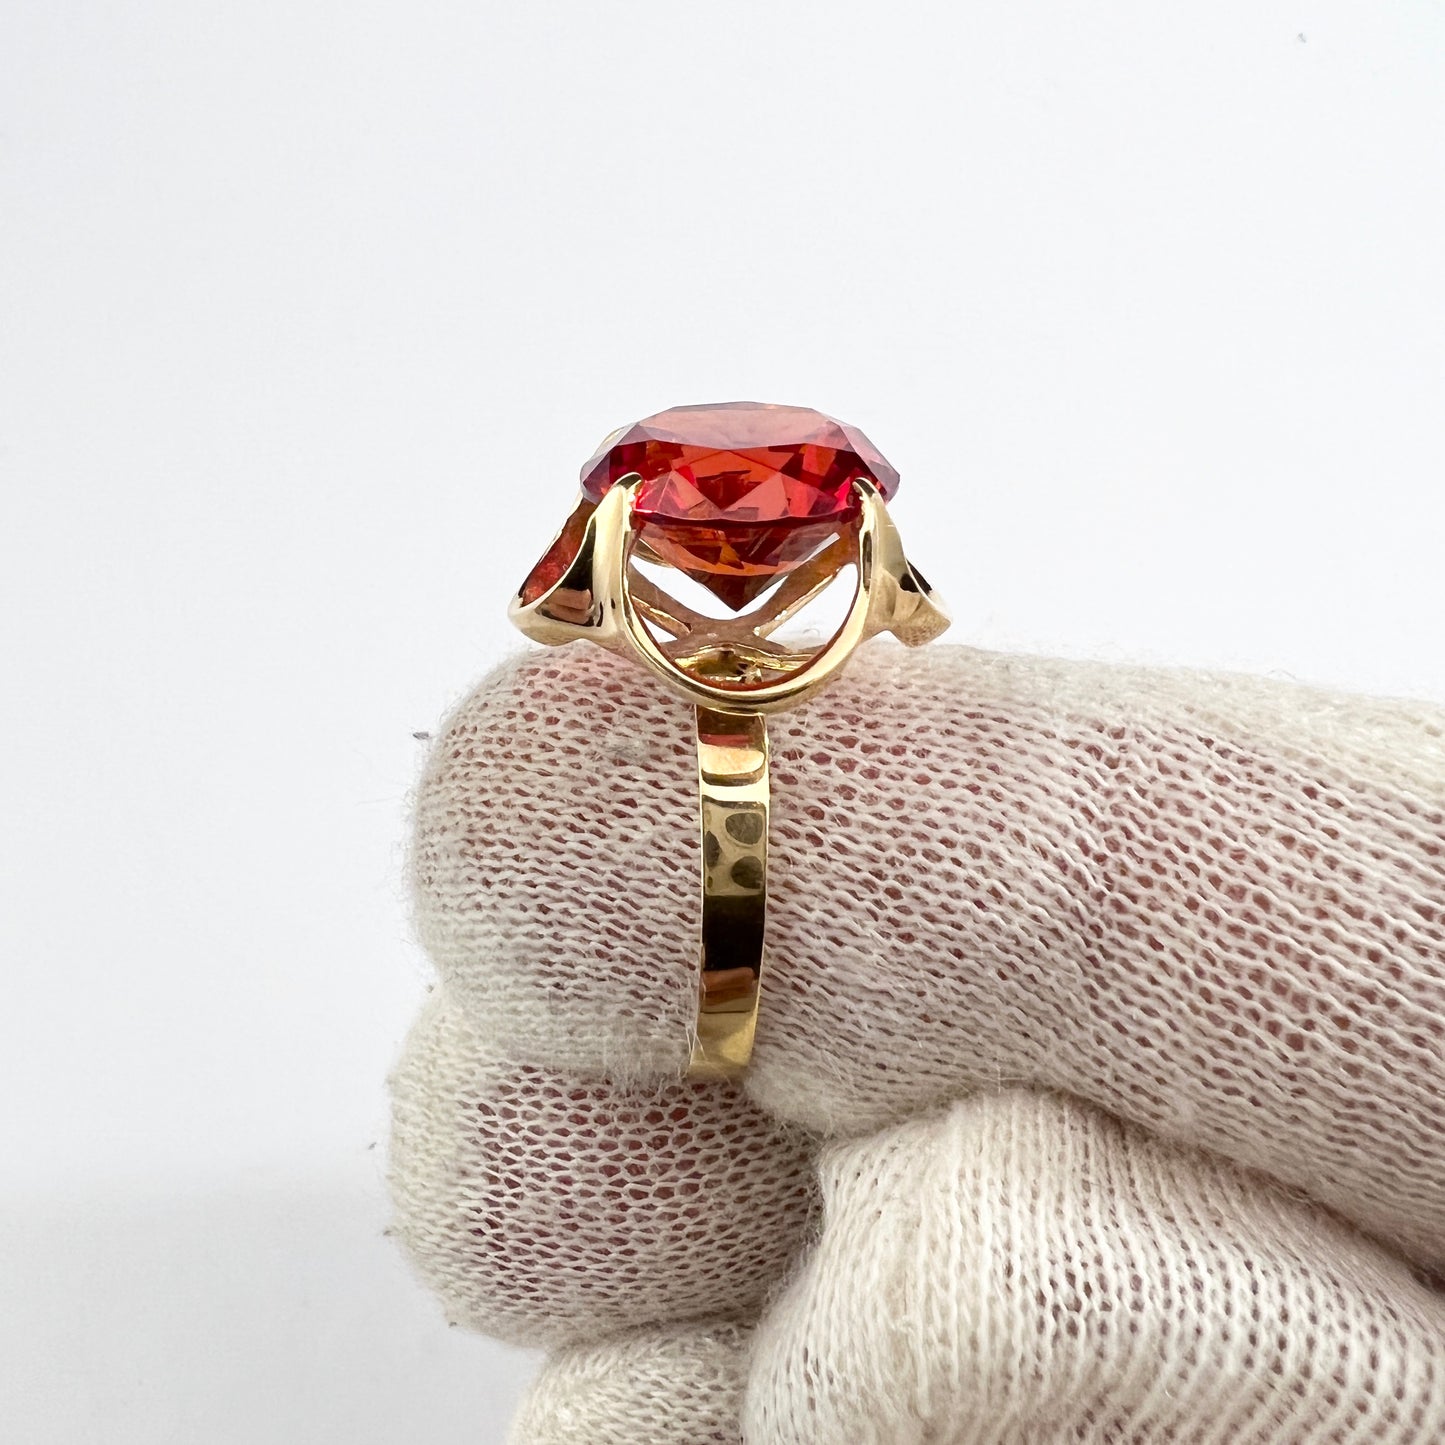 Bengt Hallberg, Sweden 1975. Vintage 18k Gold Intense Red Synthetic Spinel Ring.